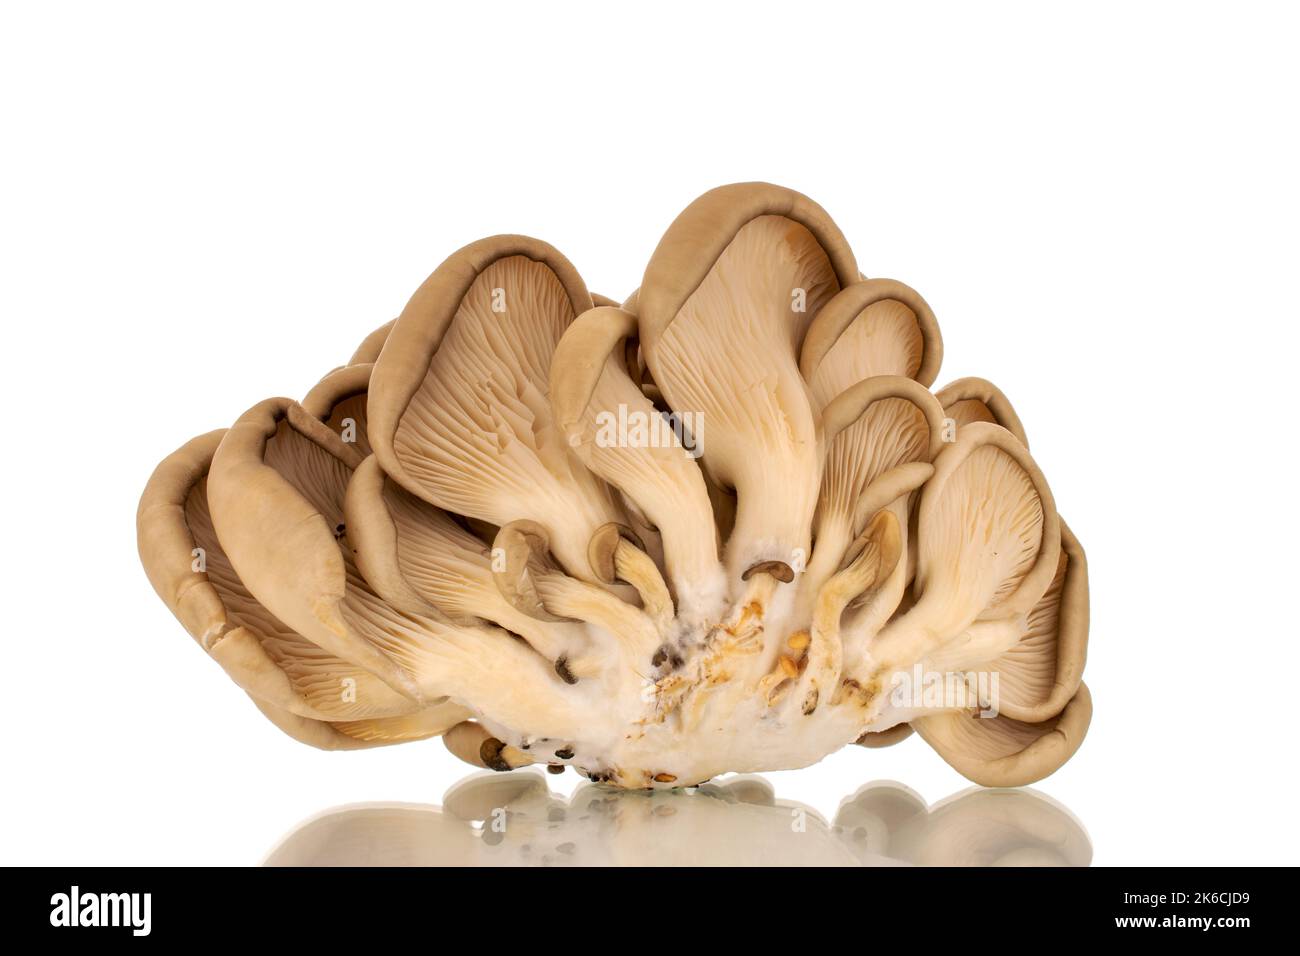 Funghi porcini freschi biologici, macro, isolati su fondo bianco. Foto Stock